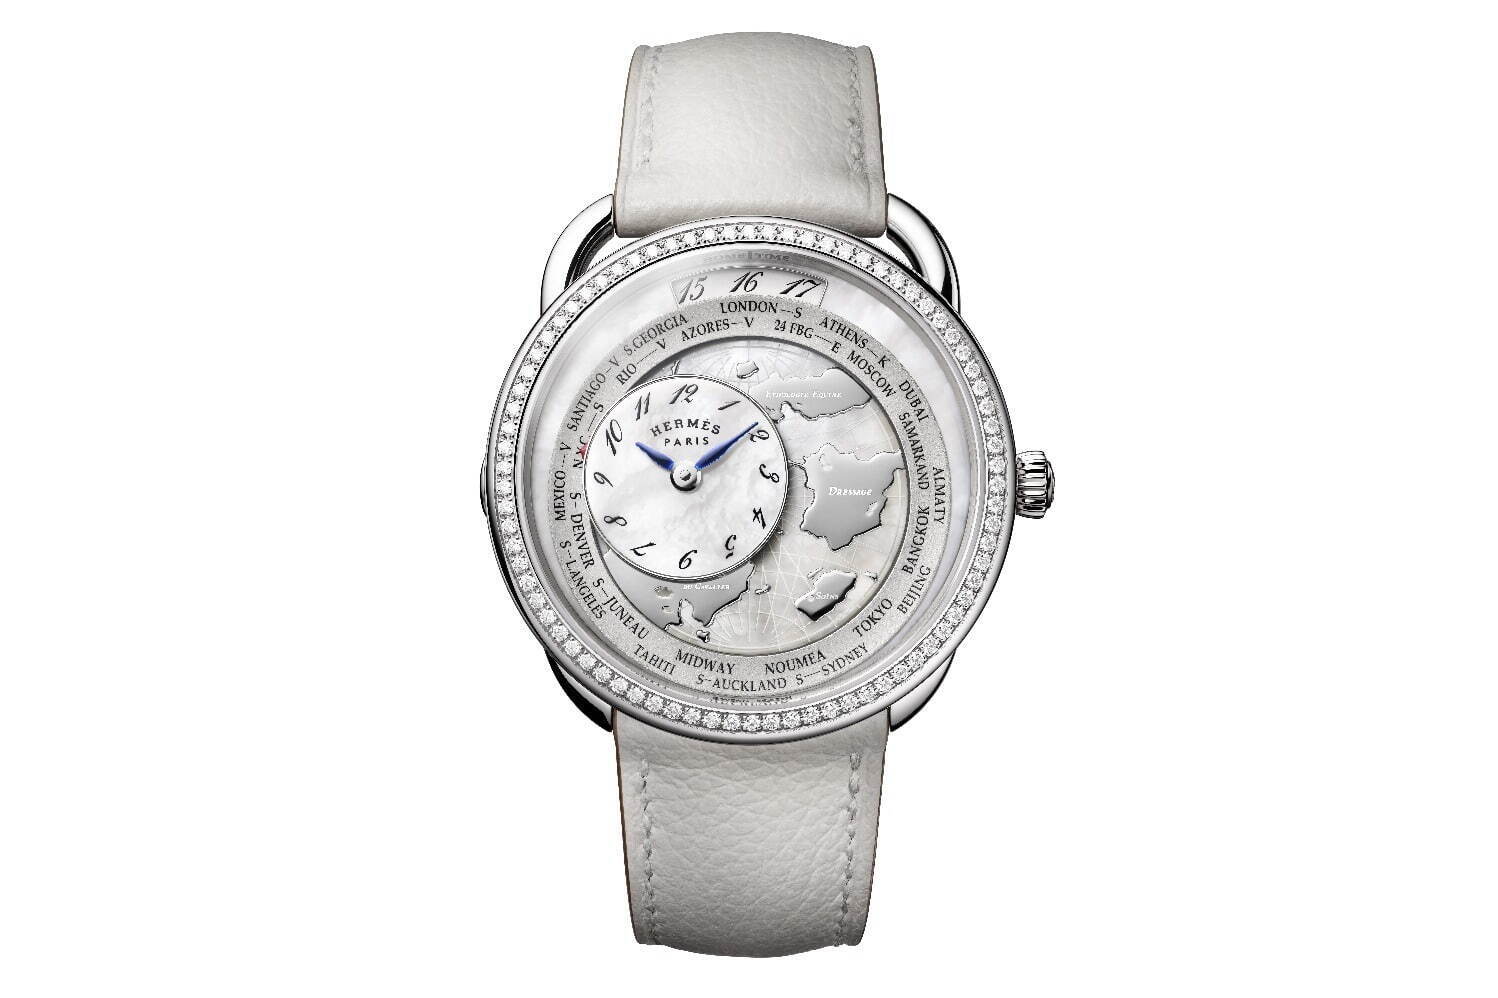 エルメスの腕時計《アルソー》“乗馬の世界地図”を描いた新作ウォッチ